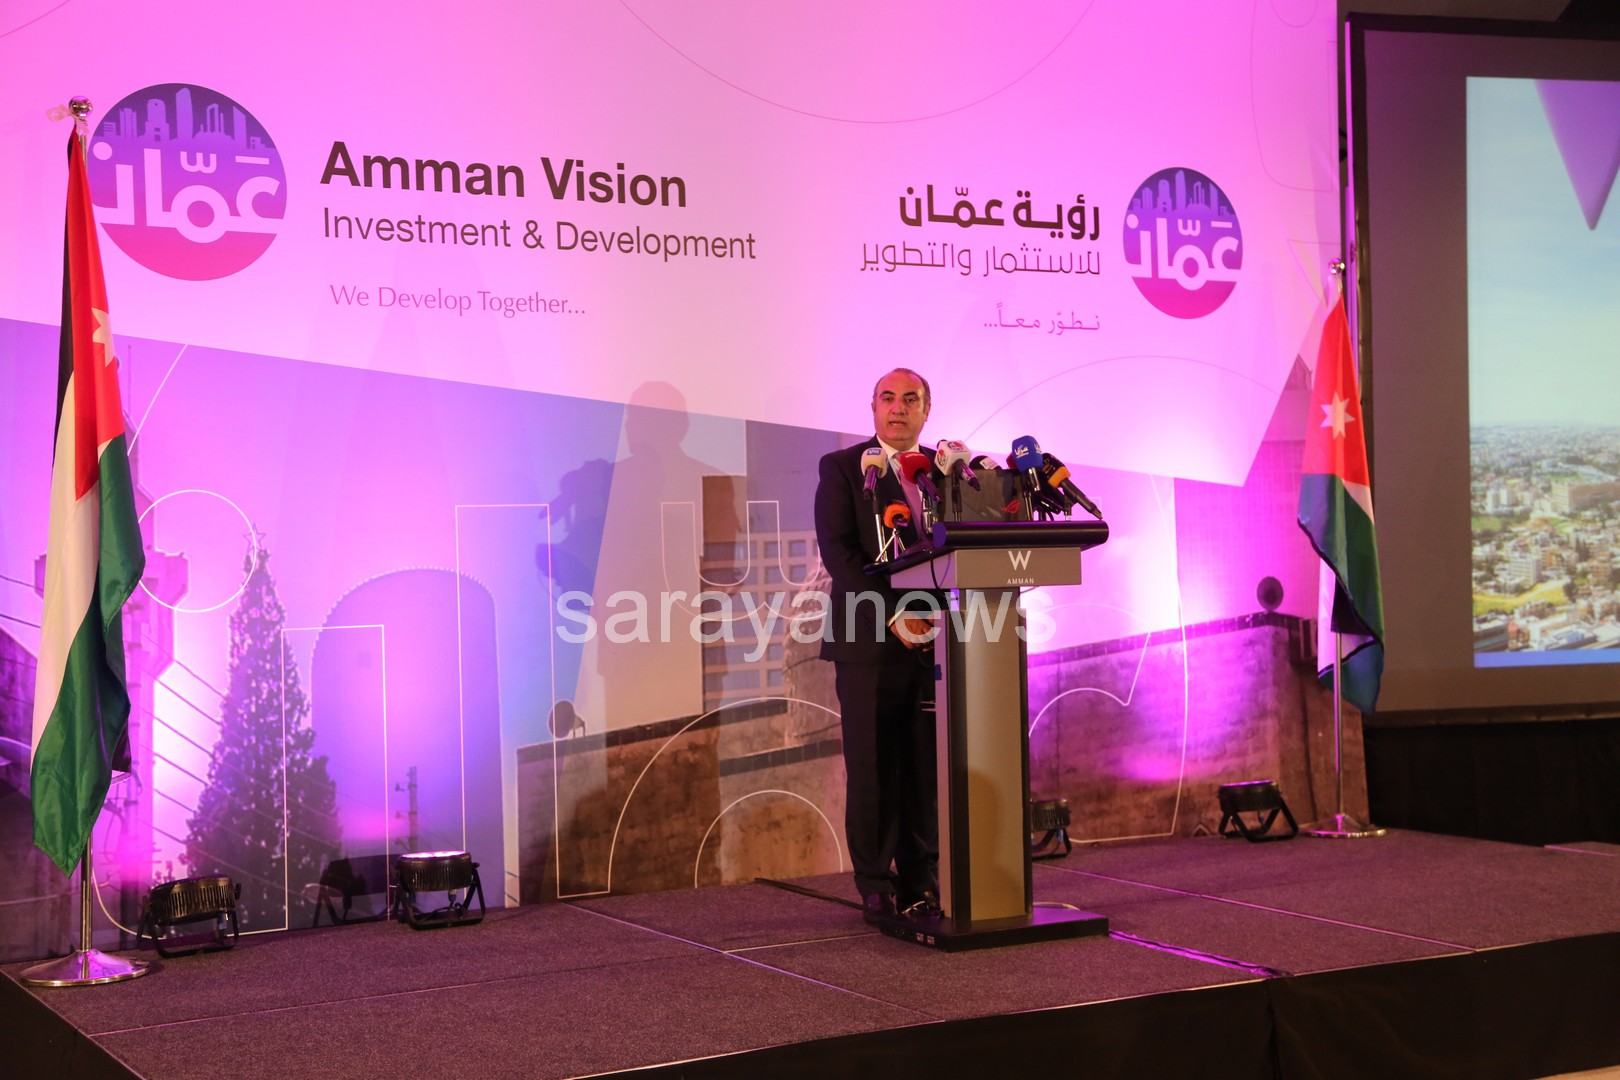 بالصور .. امانة عمان الكبرى تطلق ذراعها الاستثماري و التطويري شركة "رؤية عمان للاستثمار و التطوير"